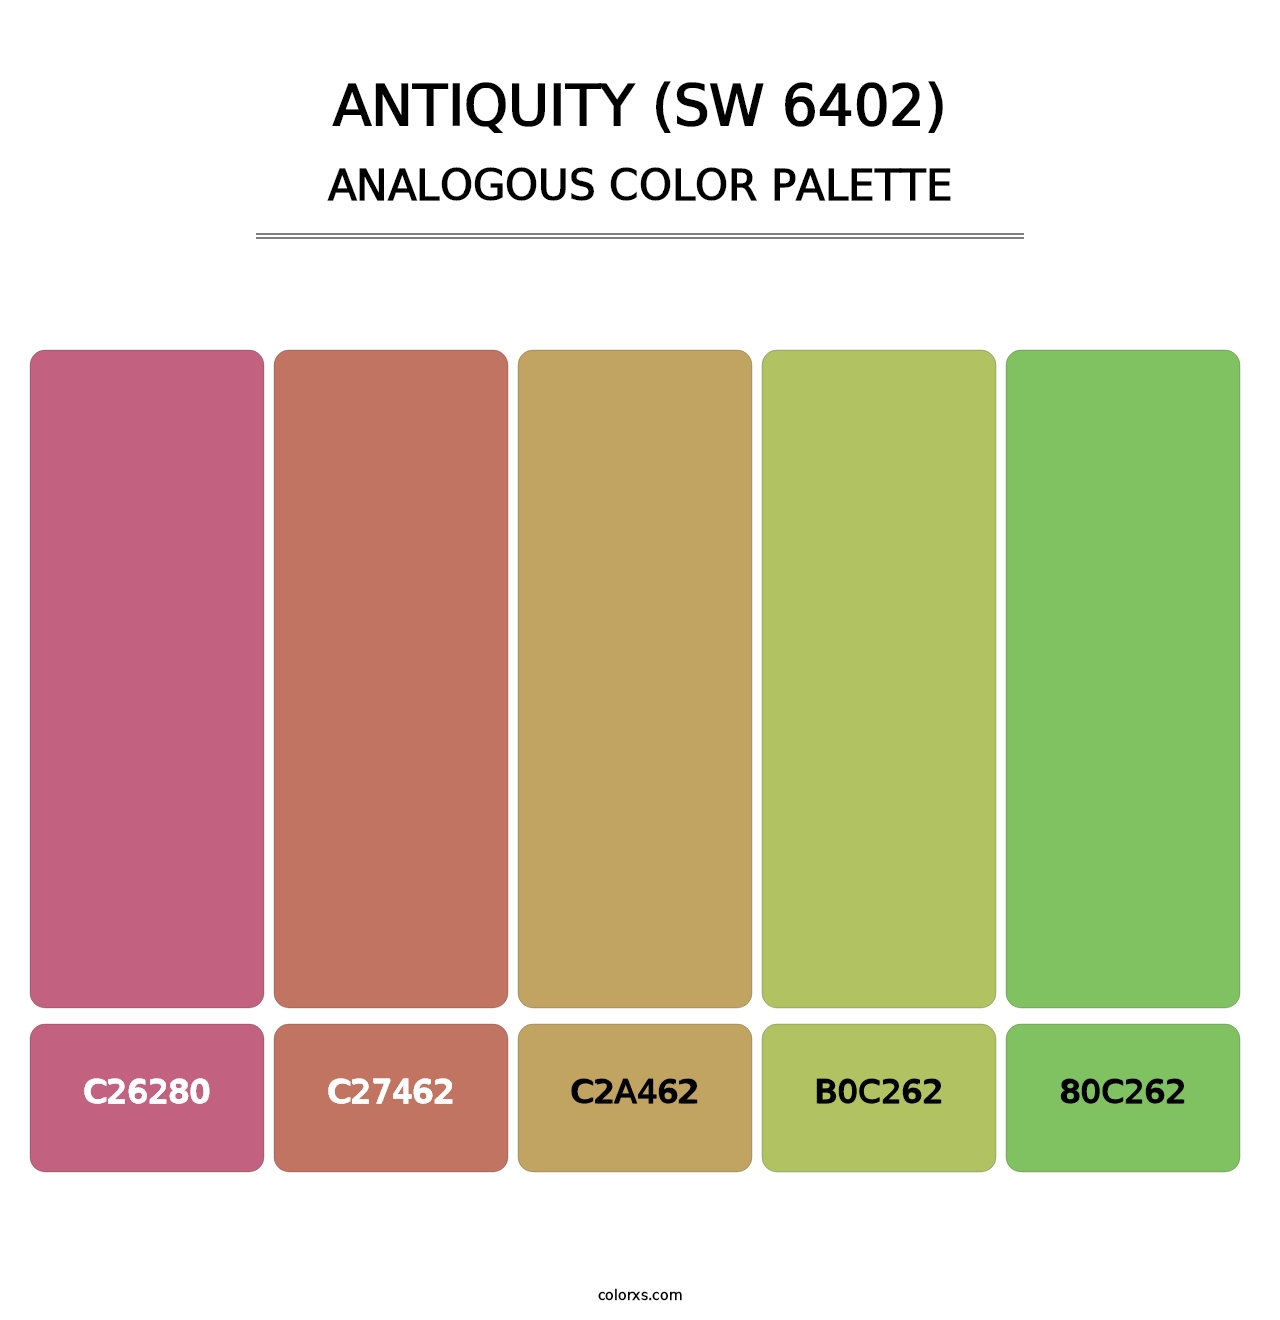 Antiquity (SW 6402) - Analogous Color Palette